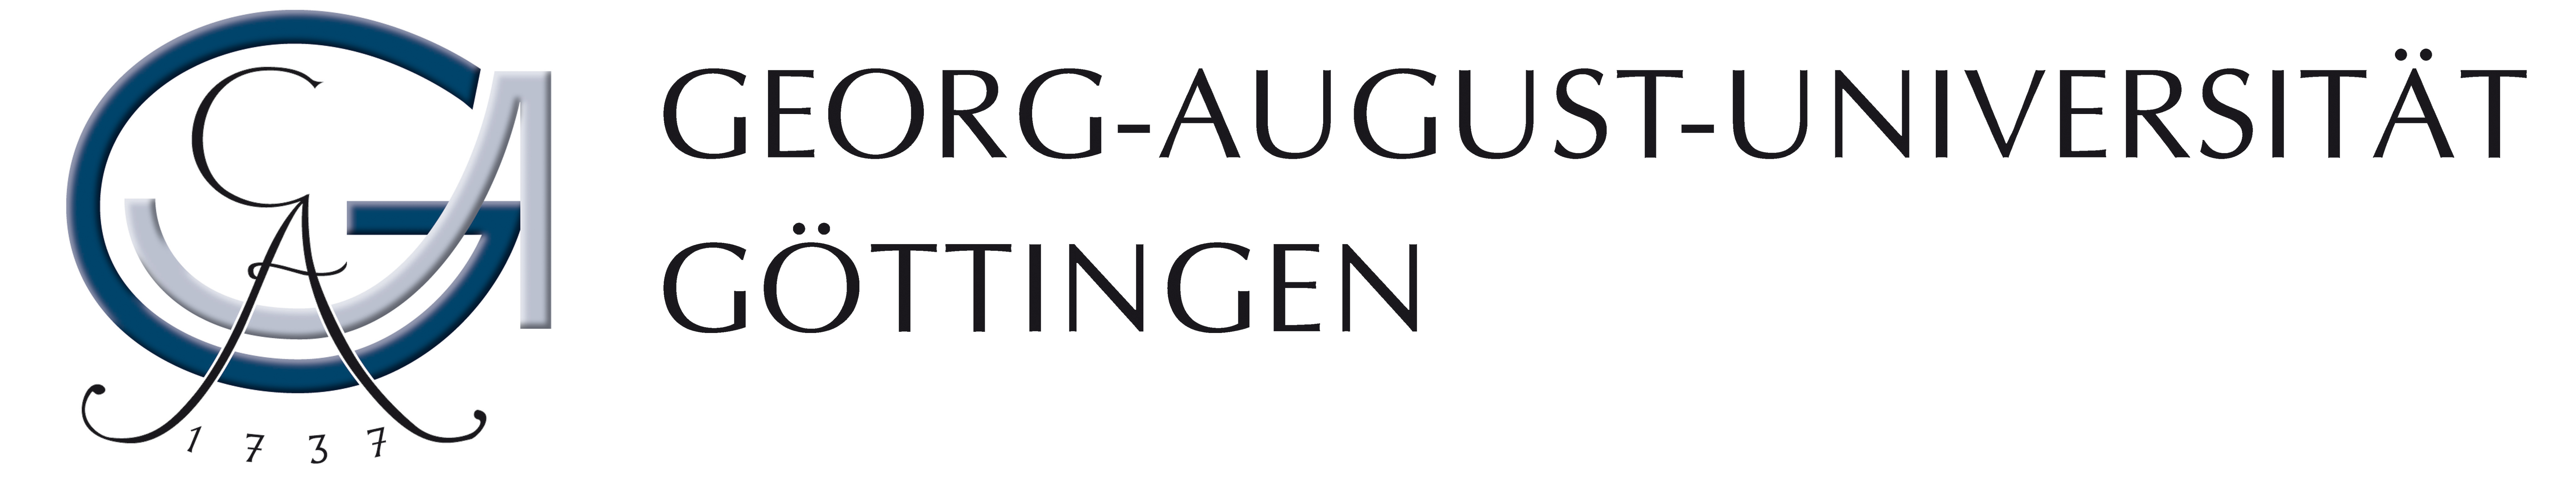 Logo Universitaet Goettingen - Georg-August